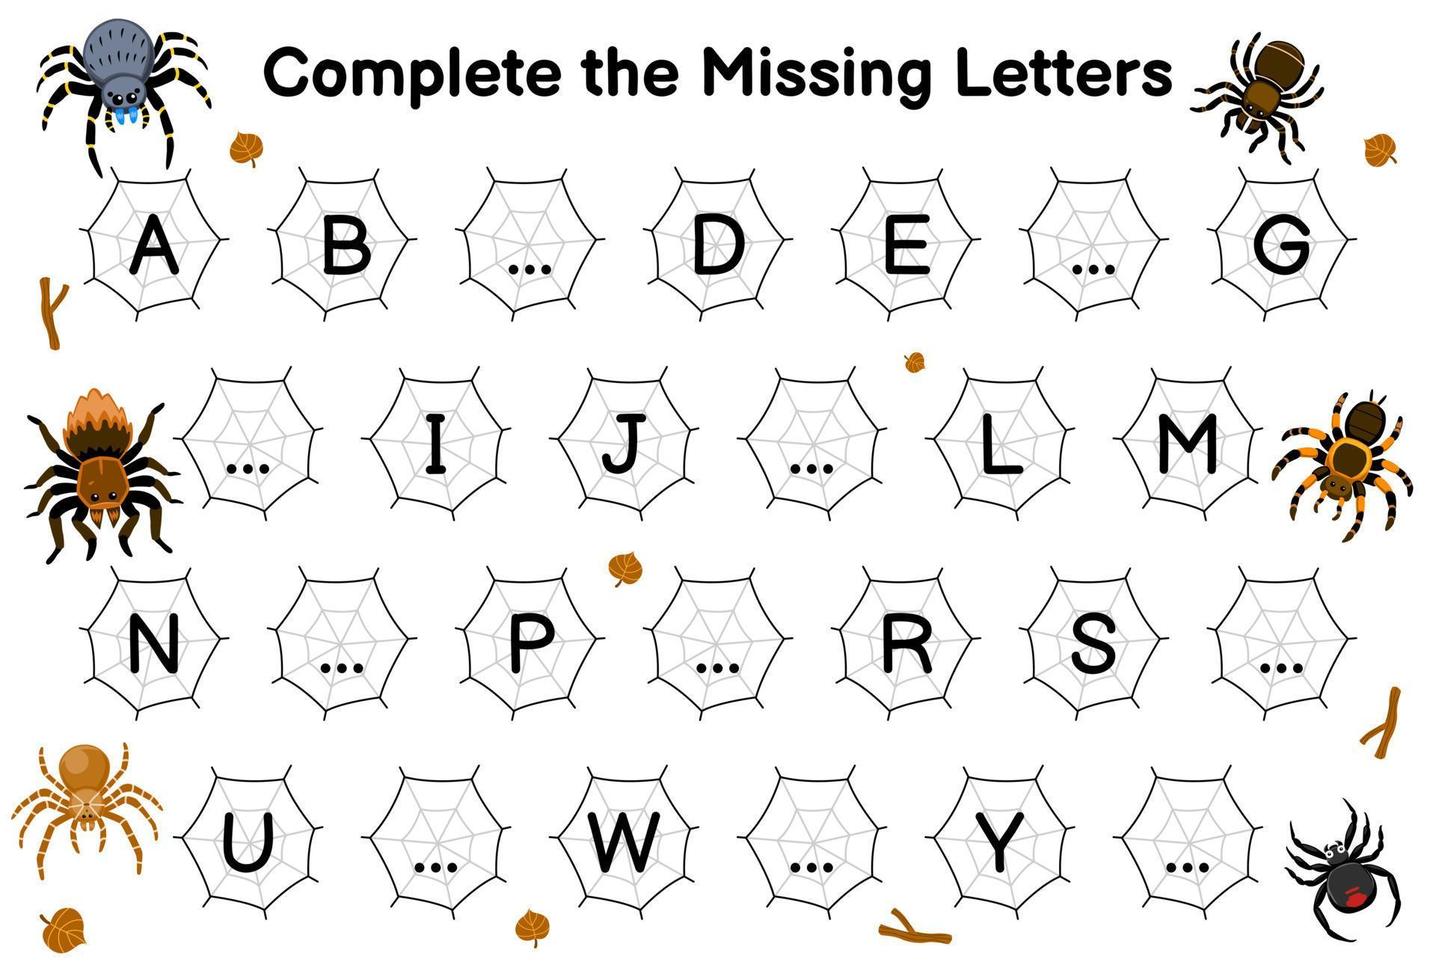 jeu éducatif pour compléter les lettres manquantes avec une feuille de calcul de bogue imprimable d'image d'araignée de dessin animé mignon vecteur